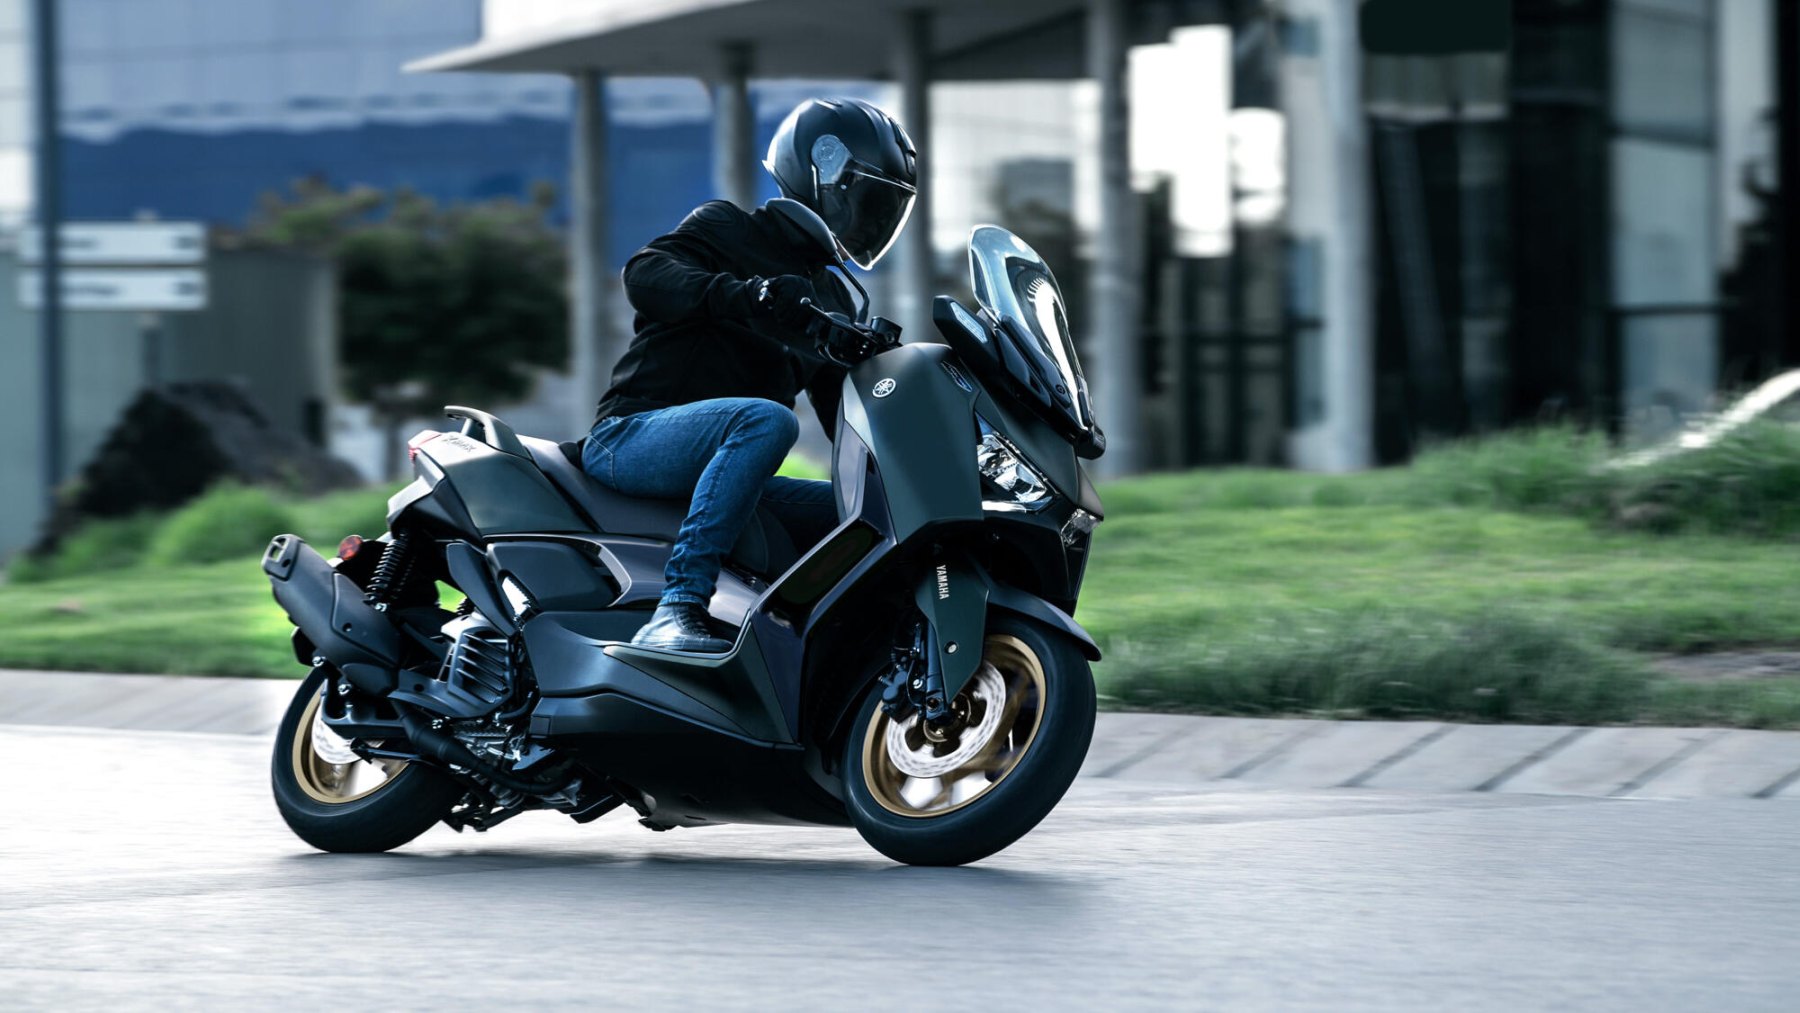 Vista dinámica lateral de la Yamaha X-Max 125cc en movimiento, destacando su diseño deportivo.